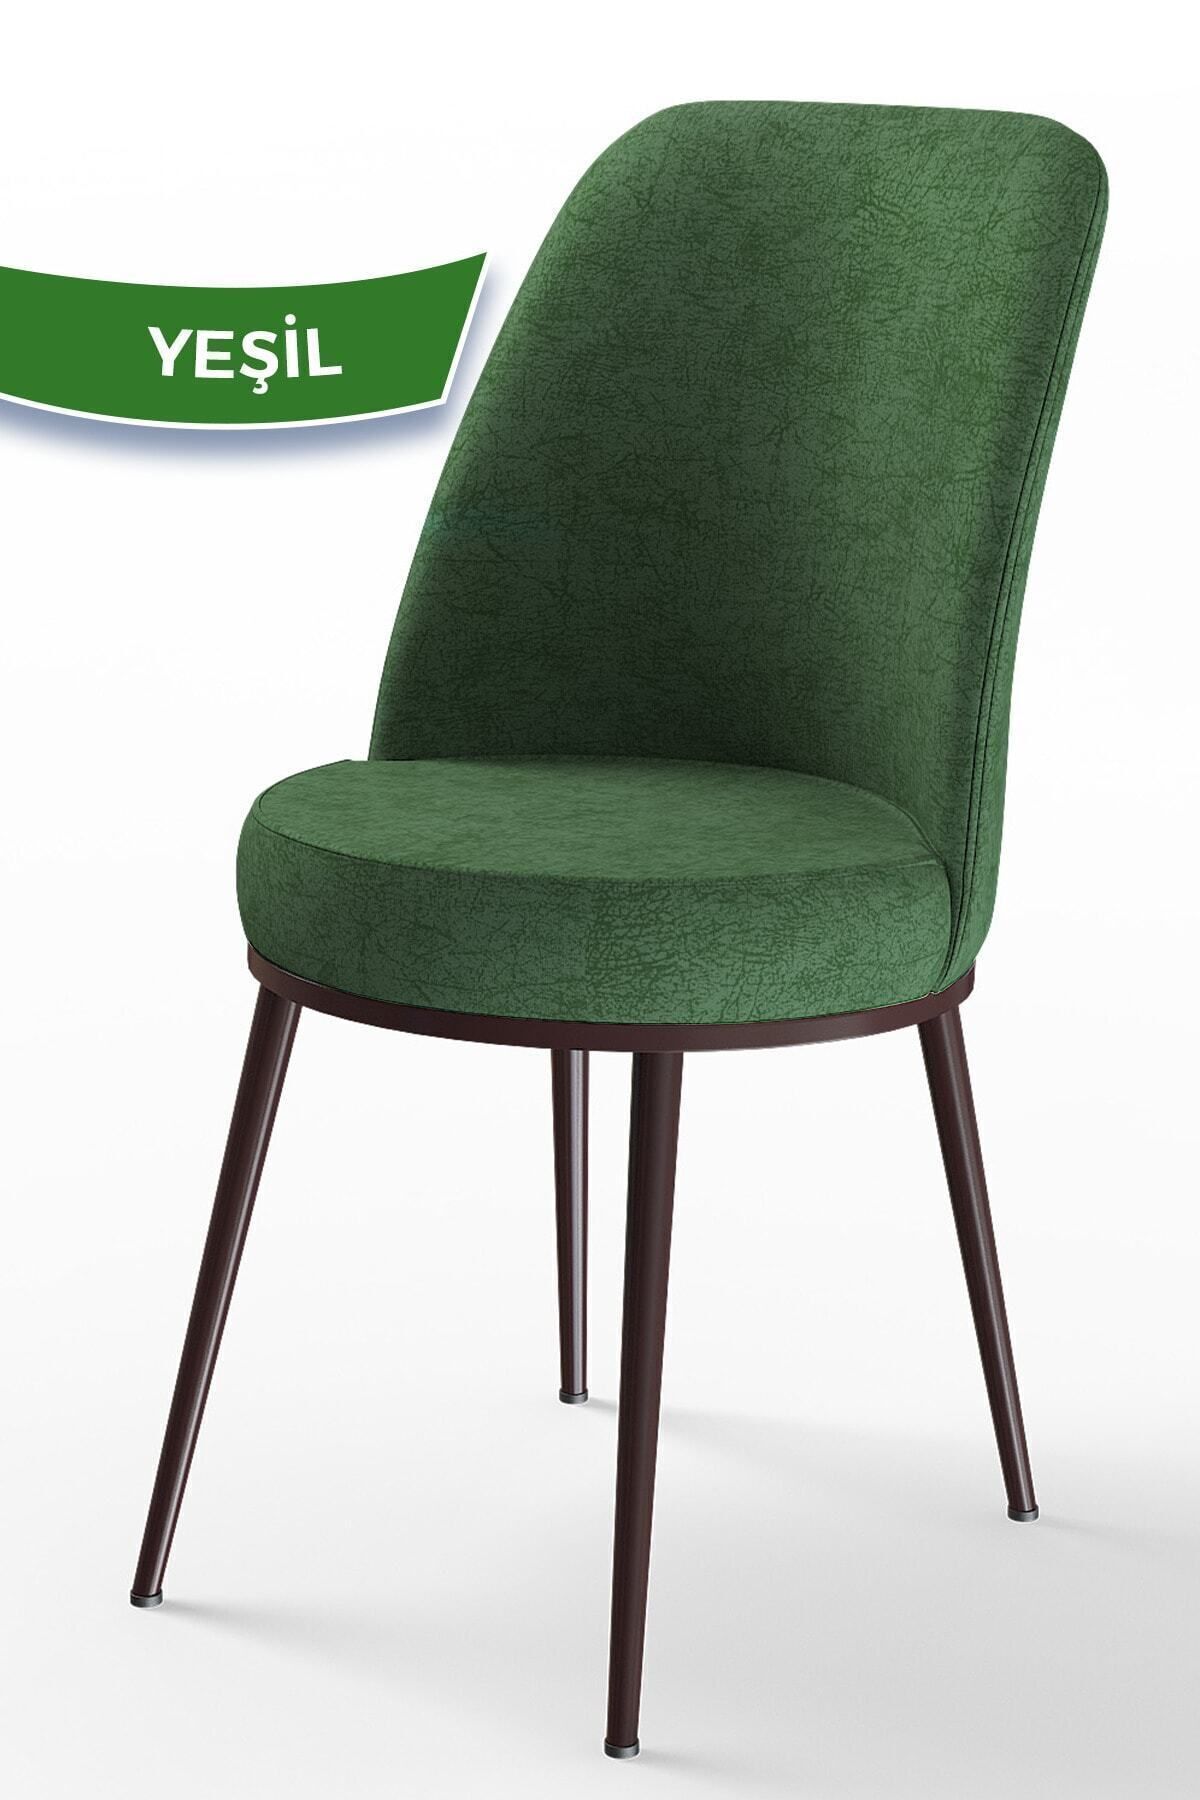 Canisa Concept Dexa Serisi Yeşil Sandalye -ayakları Kahverengi 1.sınıf Mutfak Sandalyesi Silinebilir Kumaş